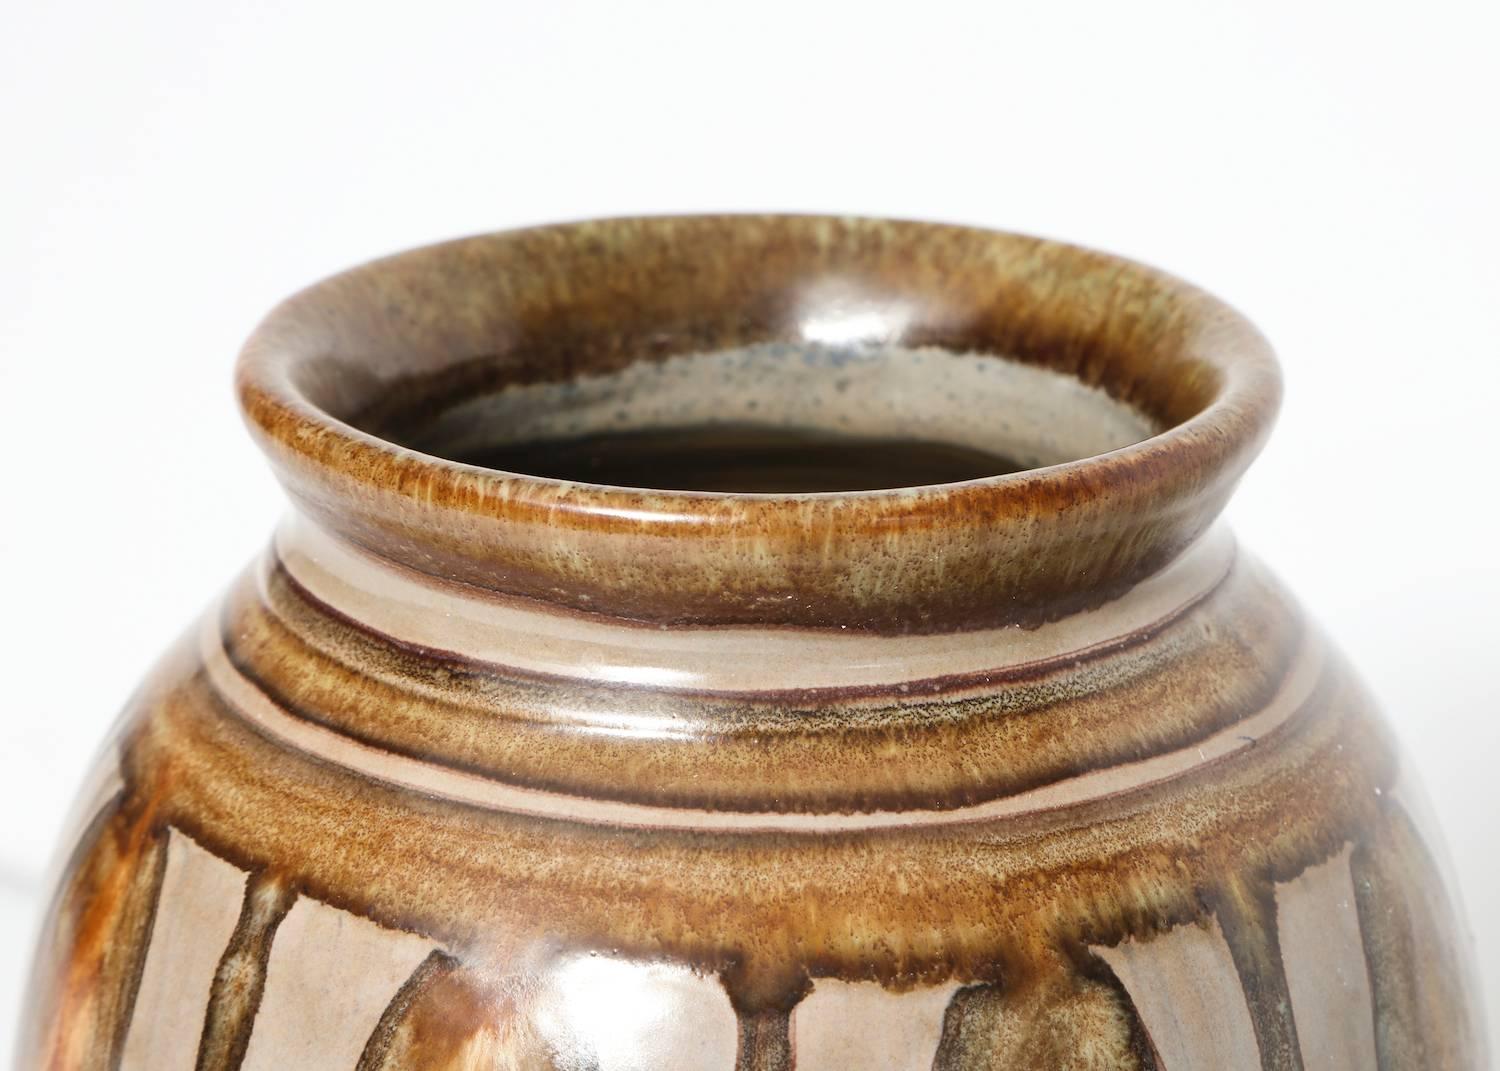 Italian Patterned Earthenware Vase by Jana Merlo